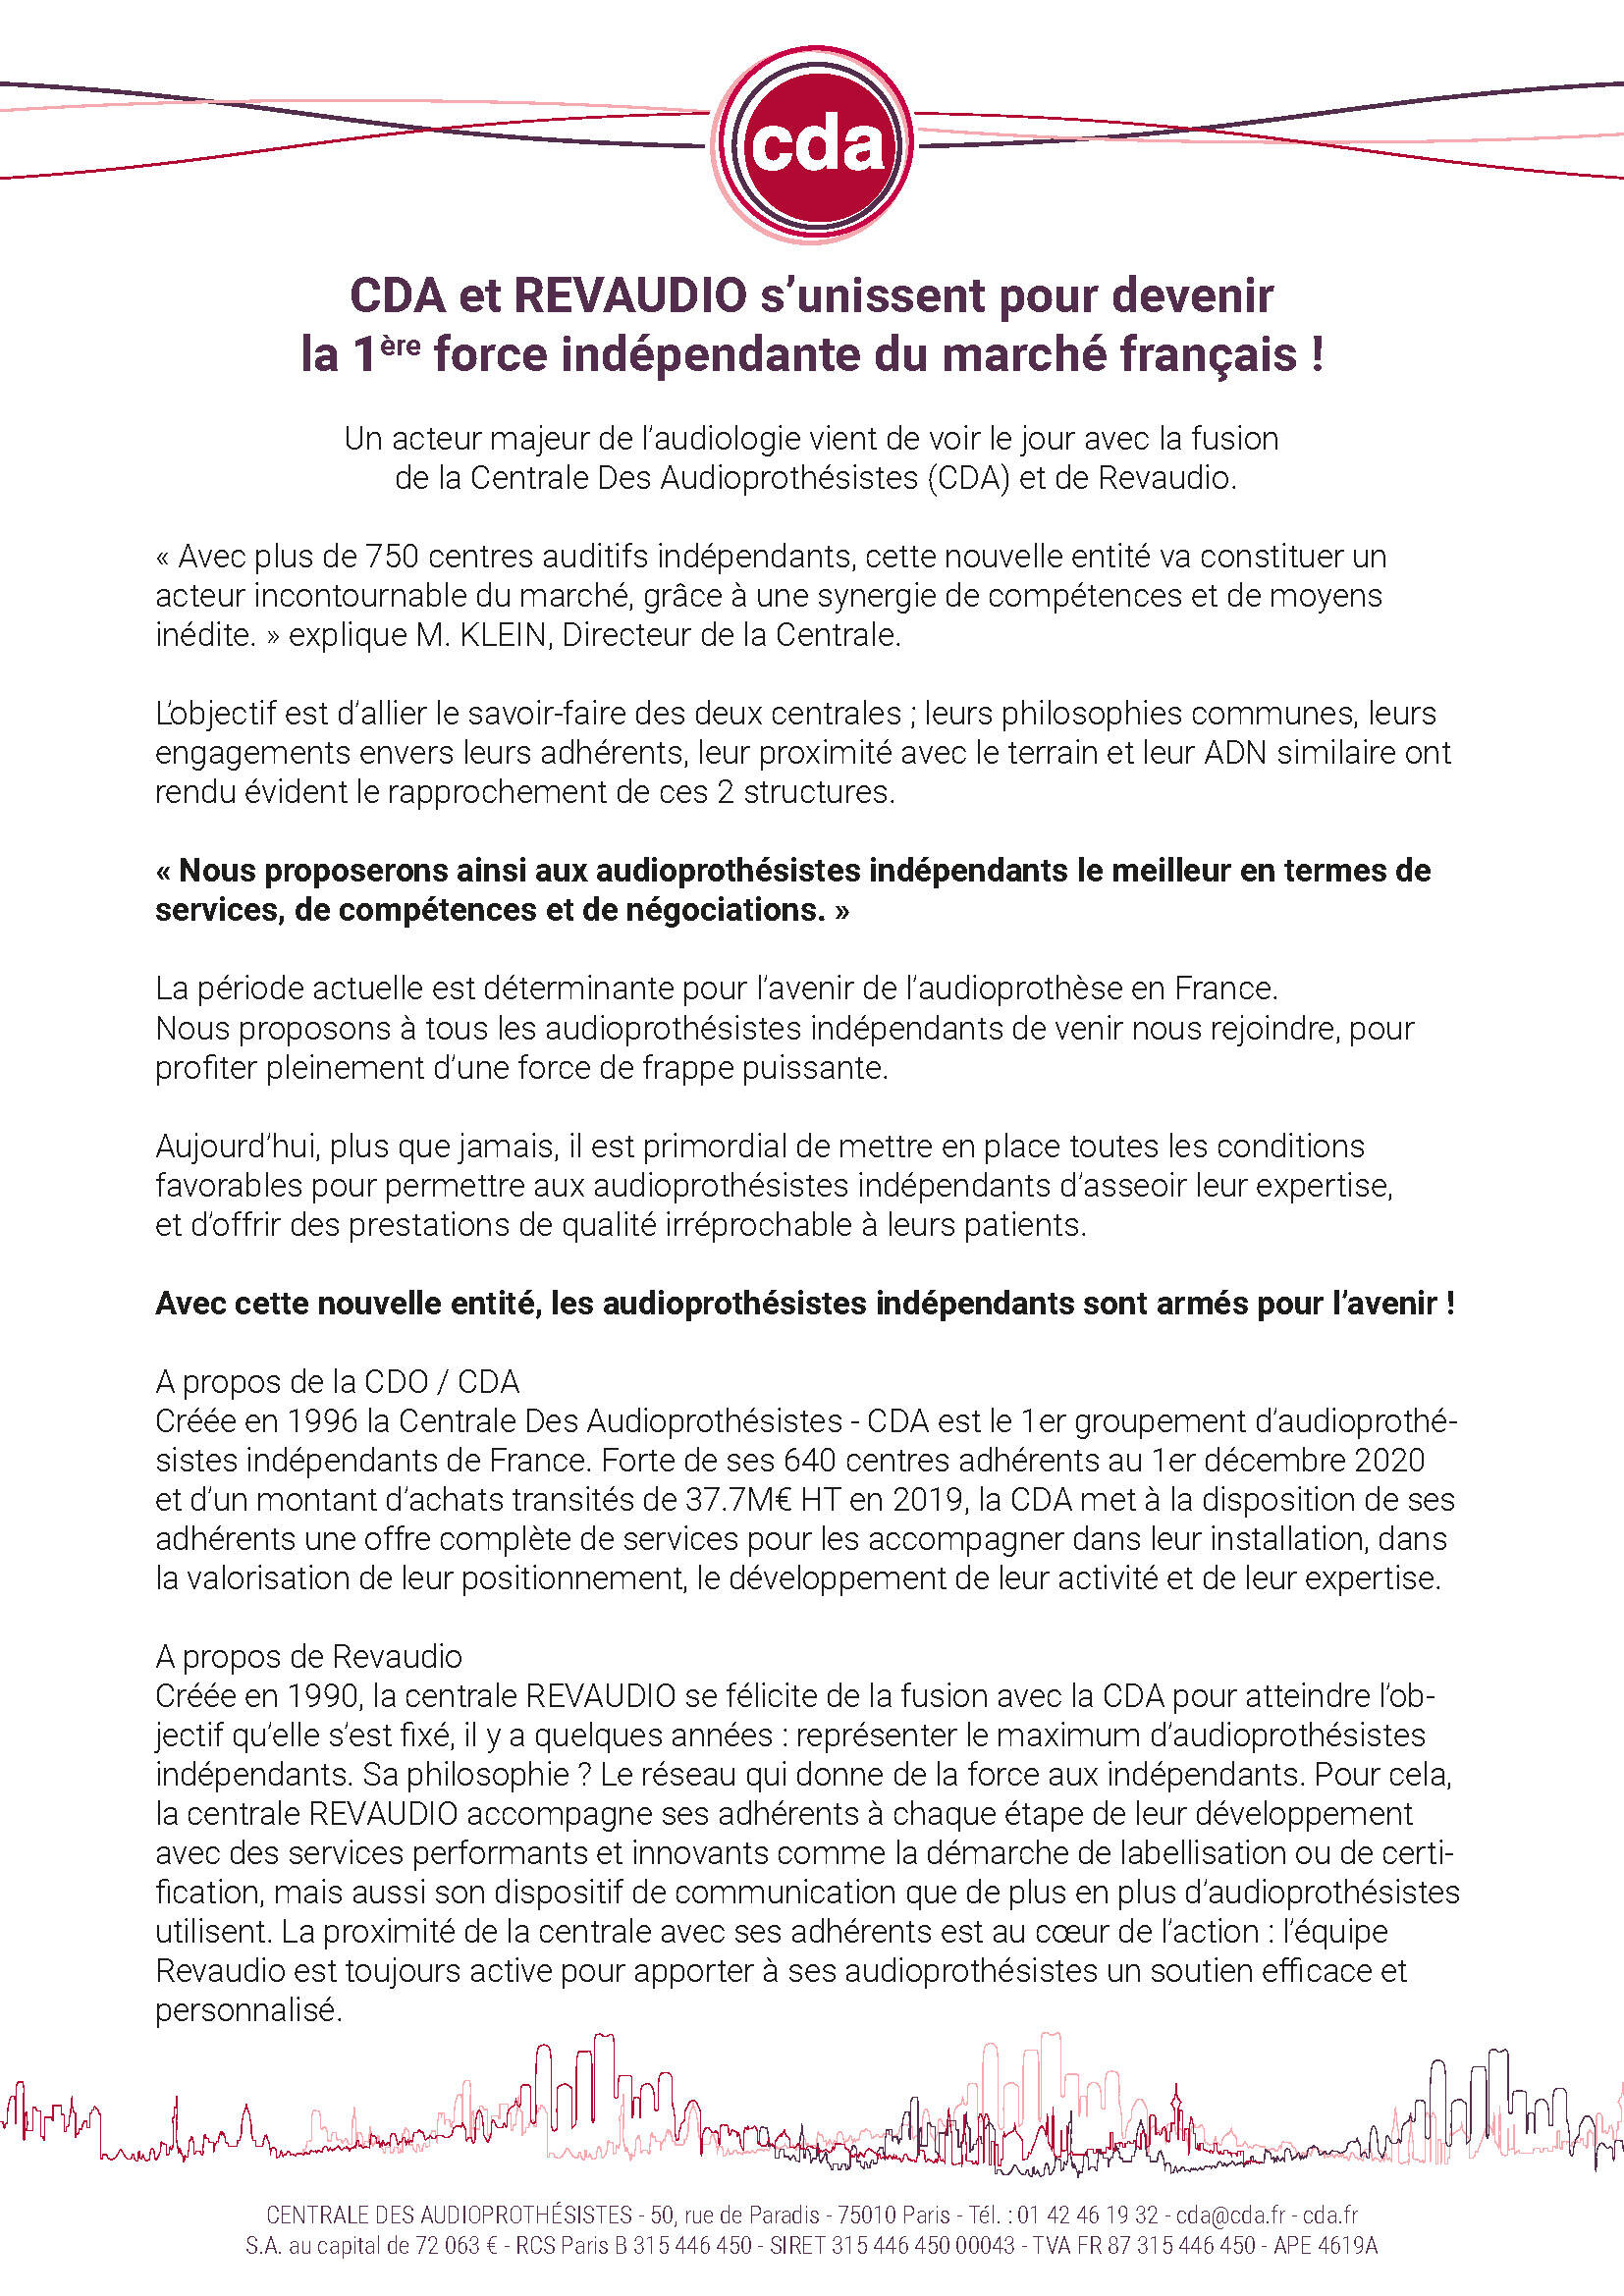 CDA et REVAUDIO s’unissent pour devenir la 1ère force indépendante du marché français !